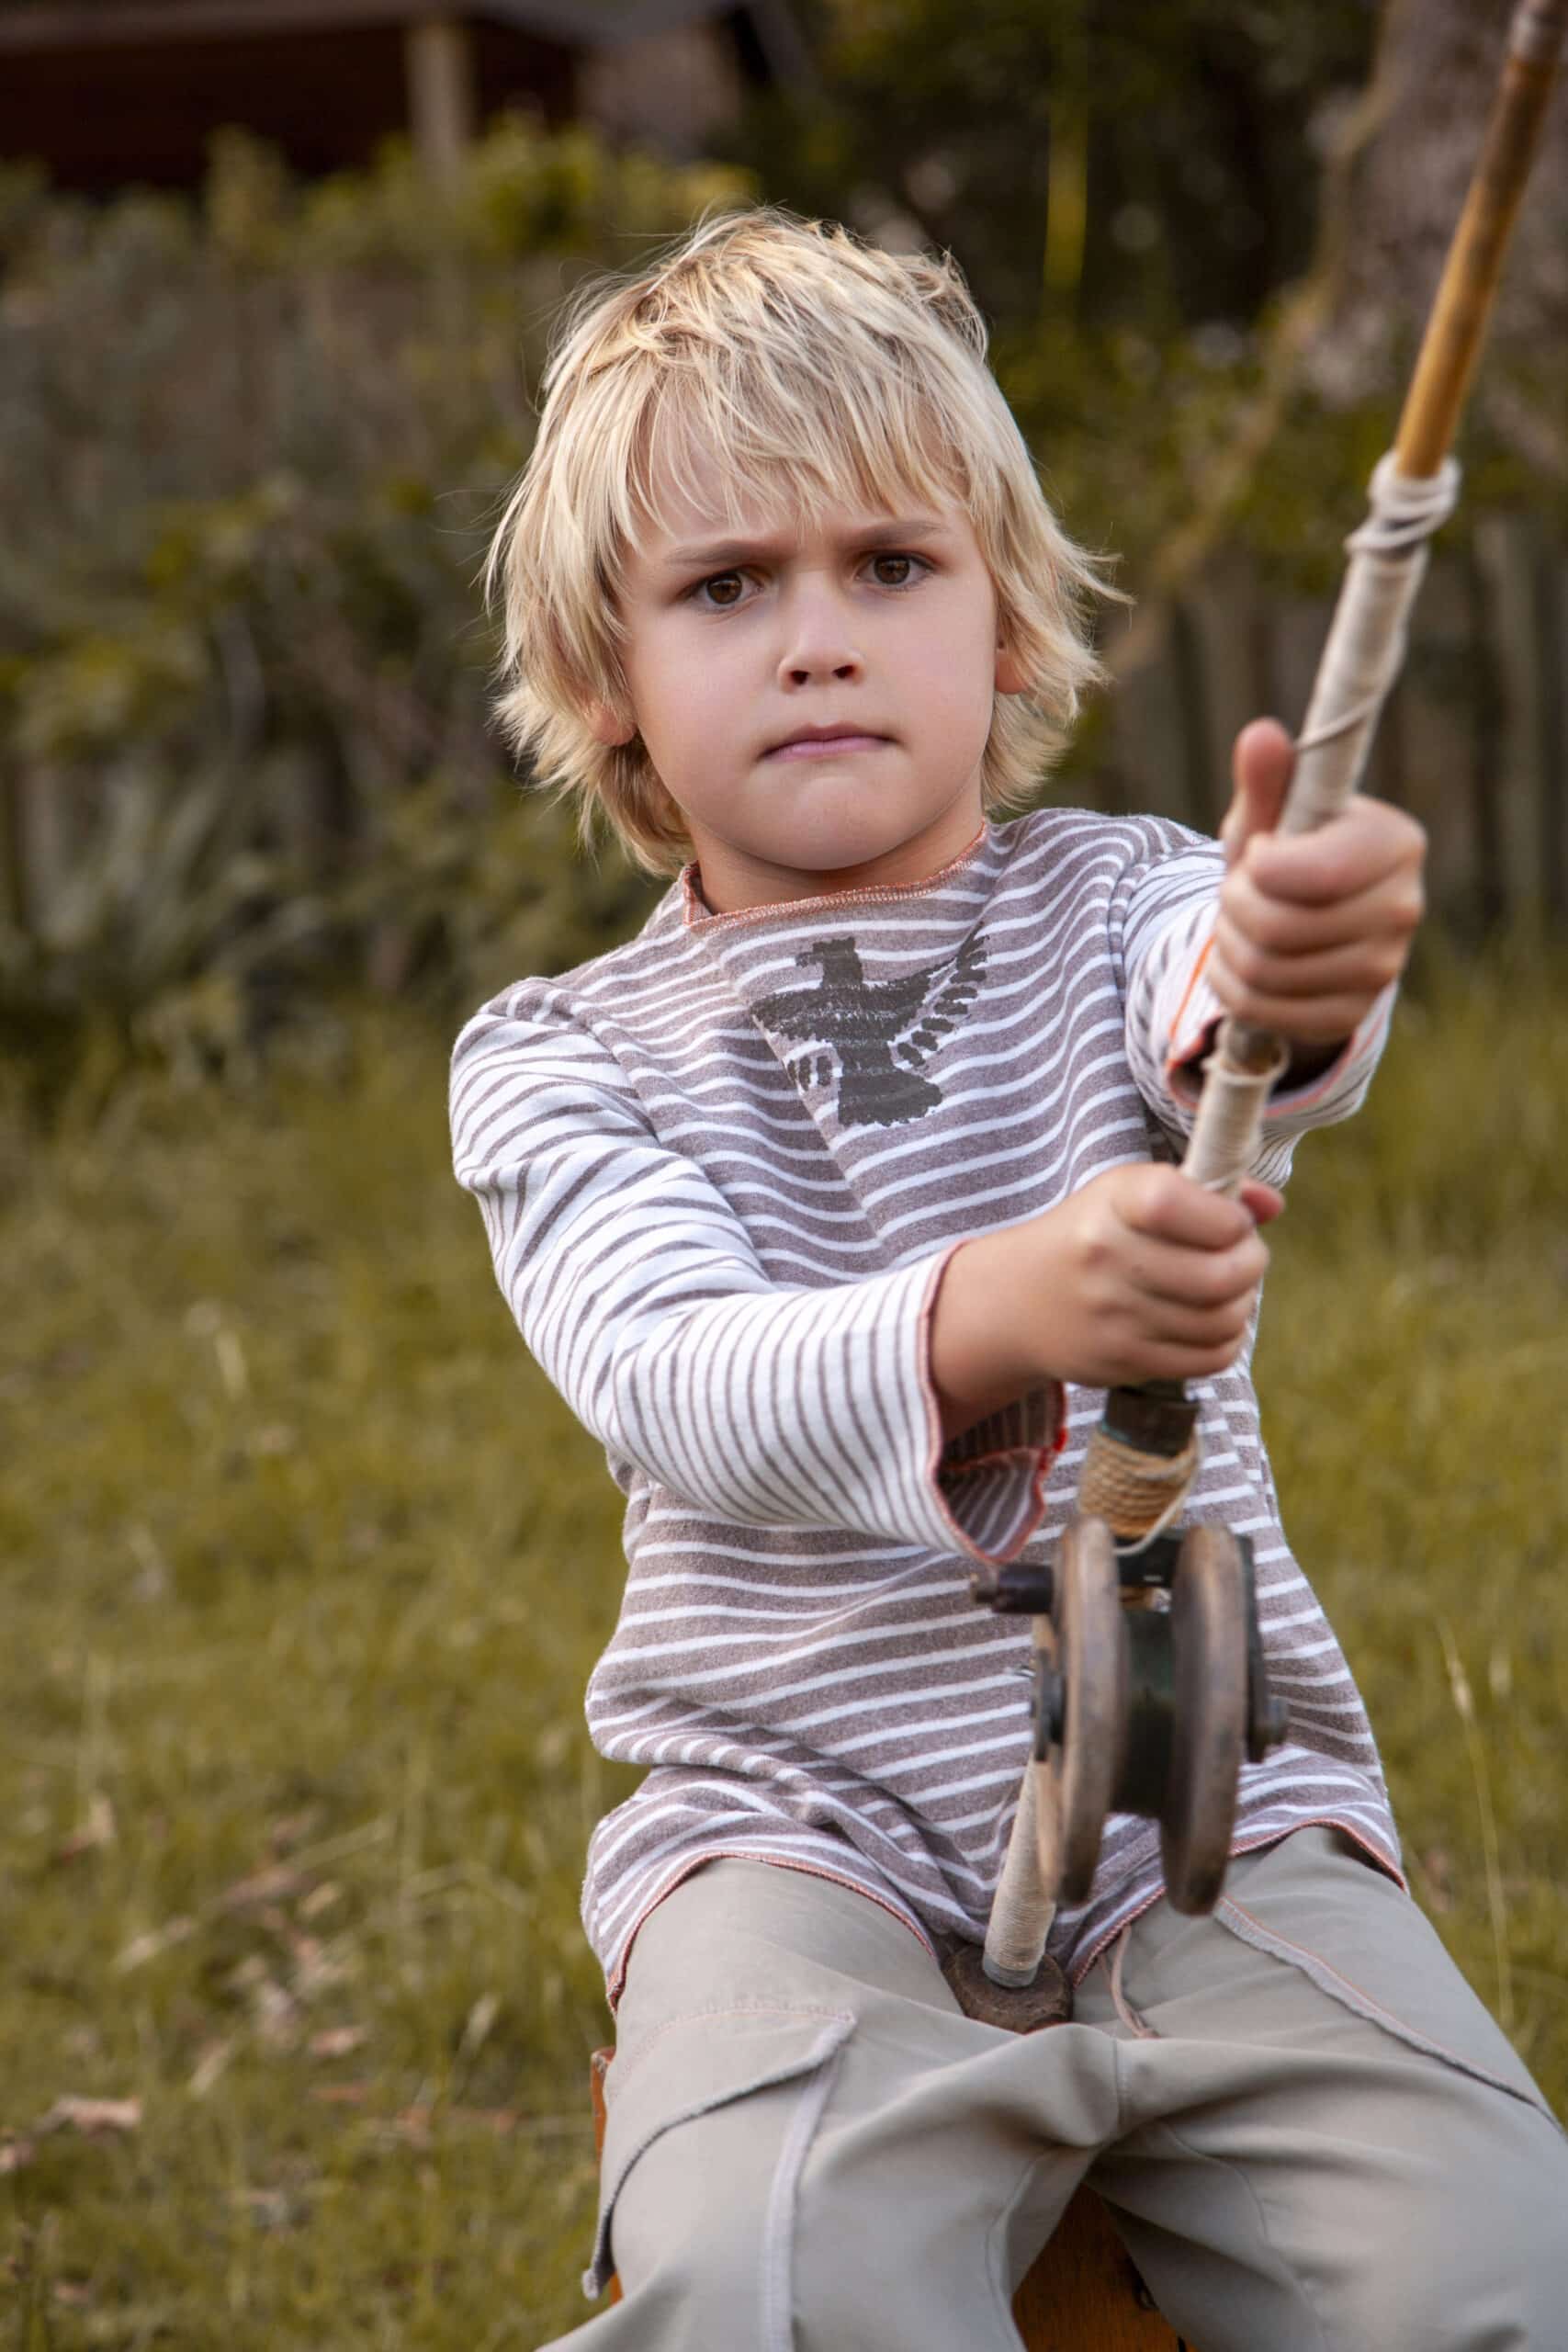 Ein kleiner Junge mit zerzaustem blondem Haar sitzt mit konzentriertem Gesichtsausdruck auf einer Seilschaukel, hält sich fest am Seil fest. Er ist im Freien, umgeben von Grün. © Fotografie Tomas Rodriguez